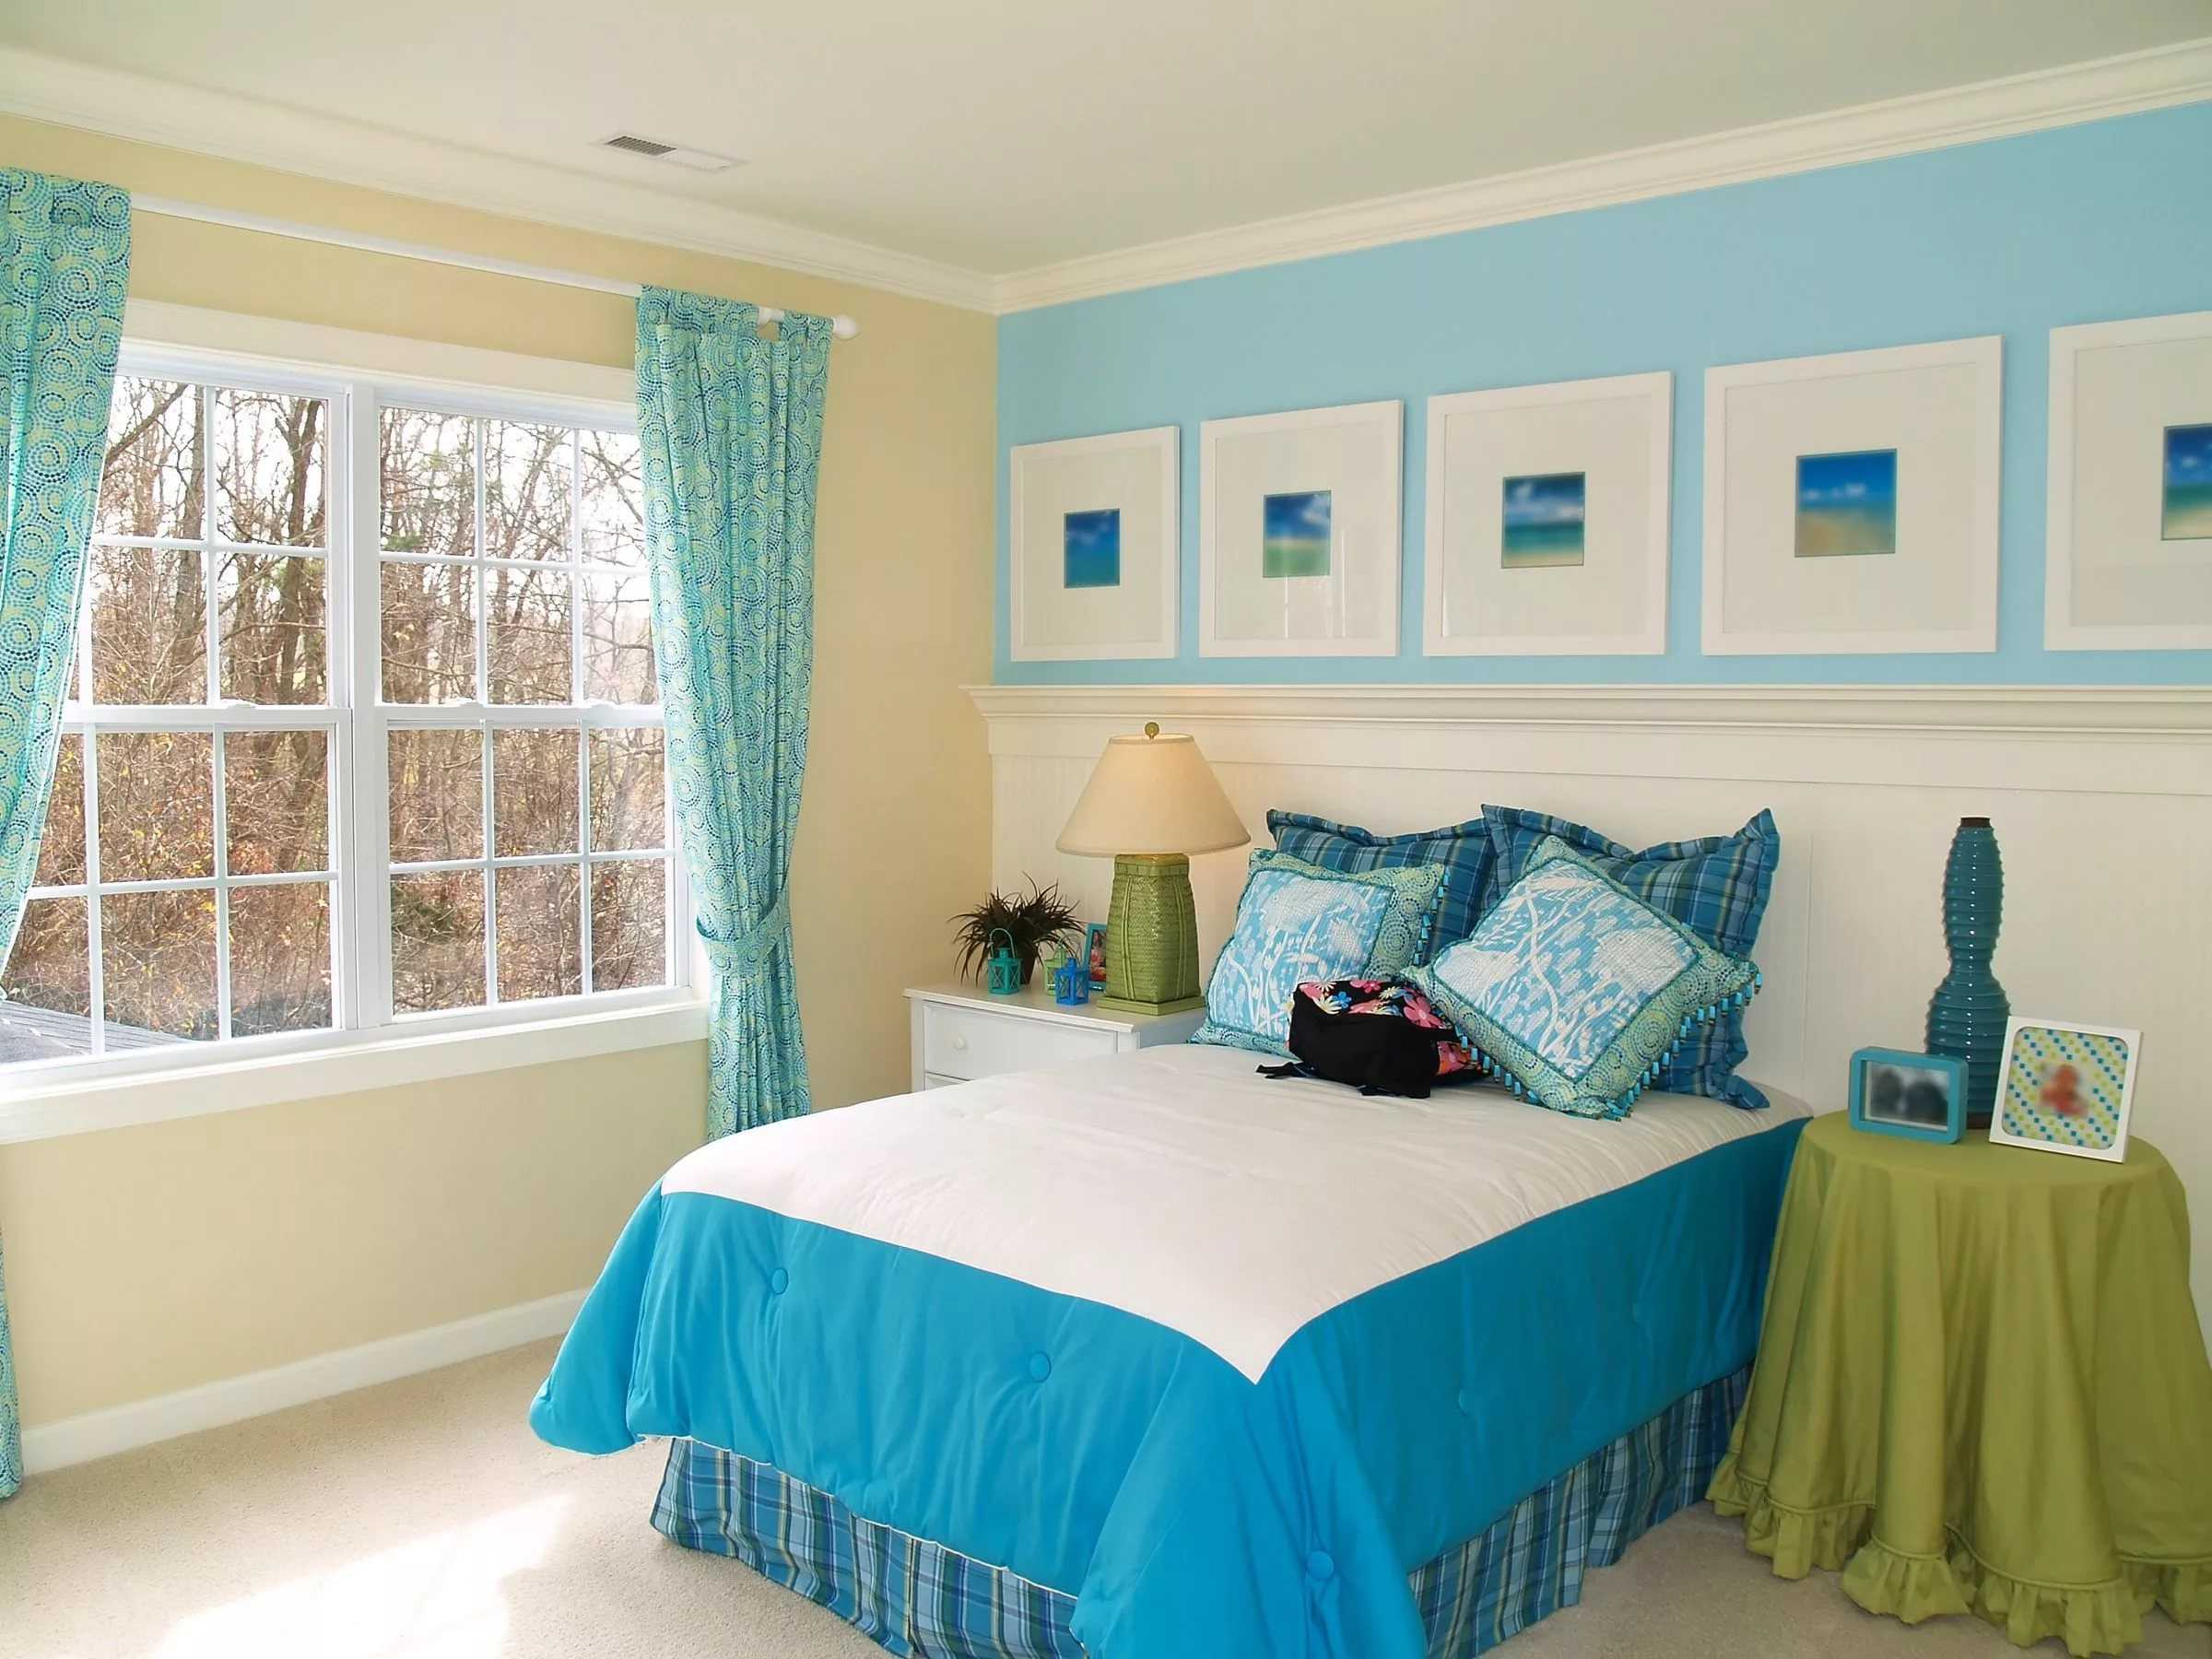 Голубые обои: для стен в интерьере, цвета и фото, светлые с золотом, с какими сочетаются, фон комнаты белый